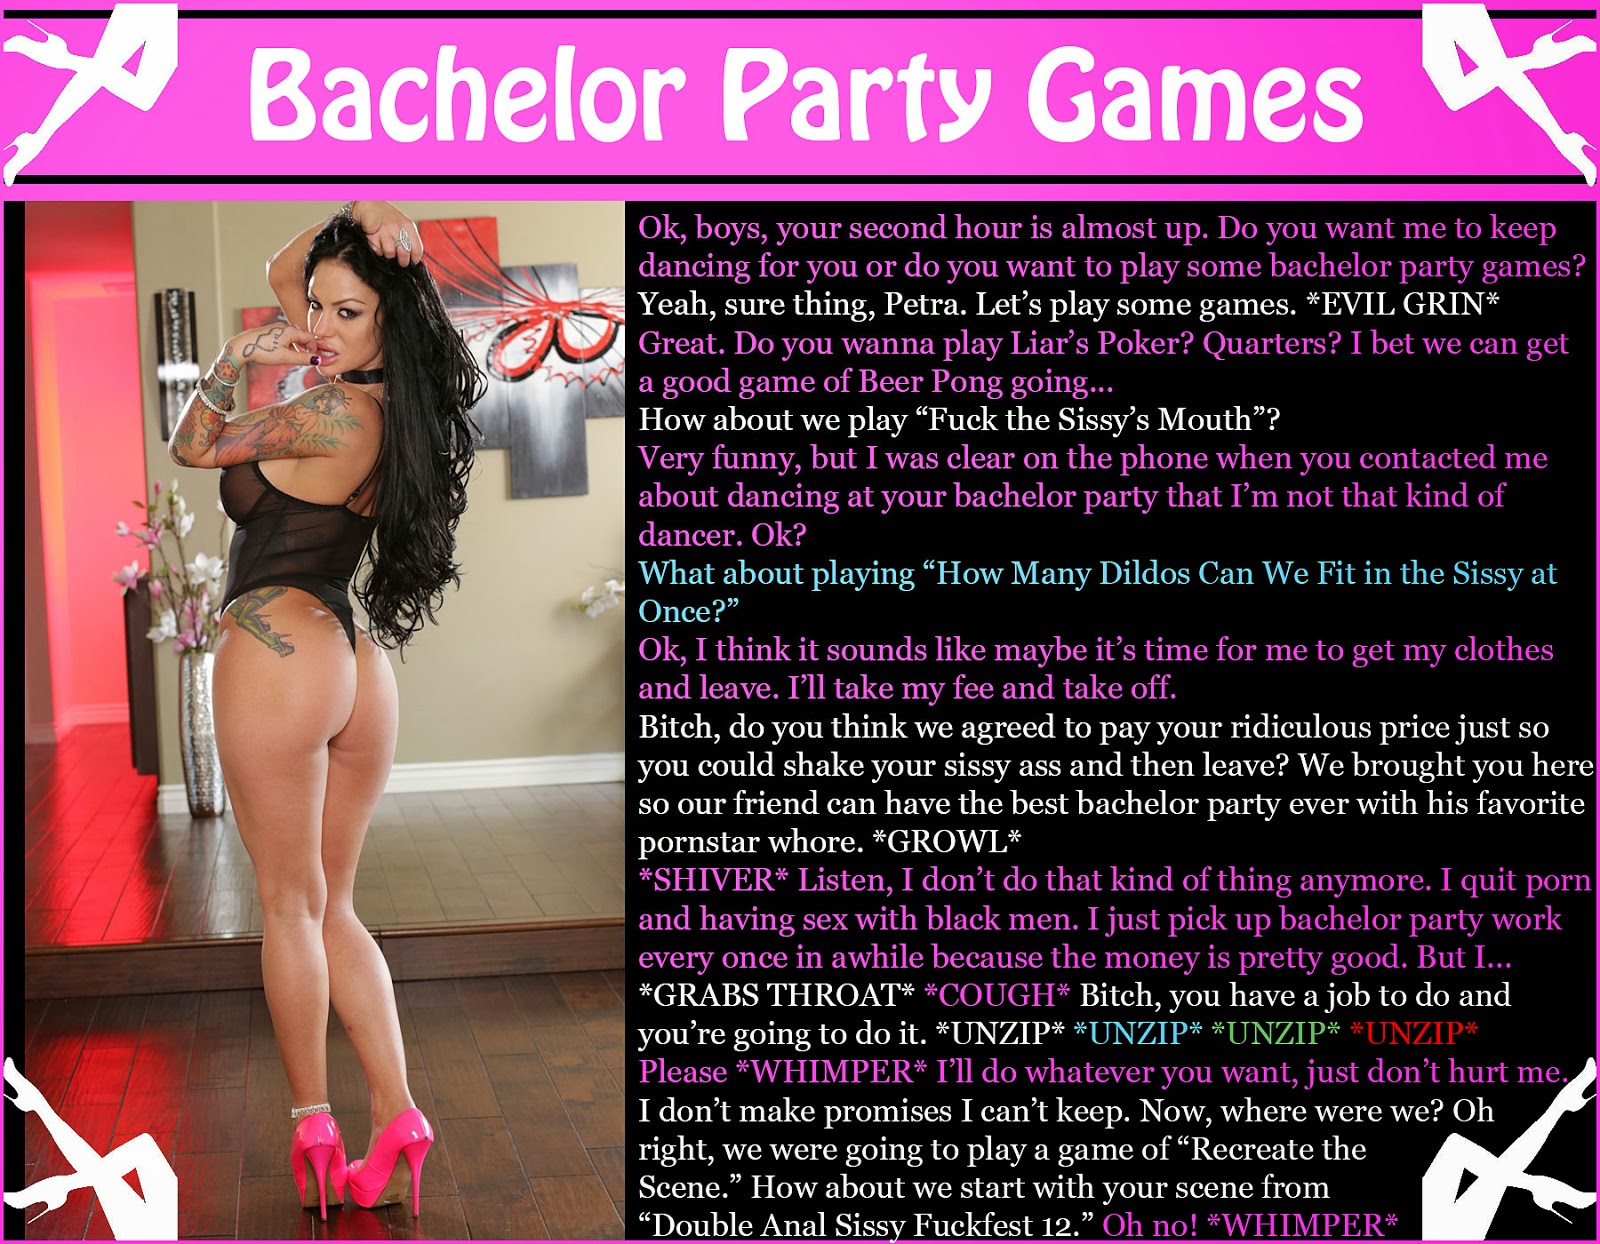 Bachelorette party captions